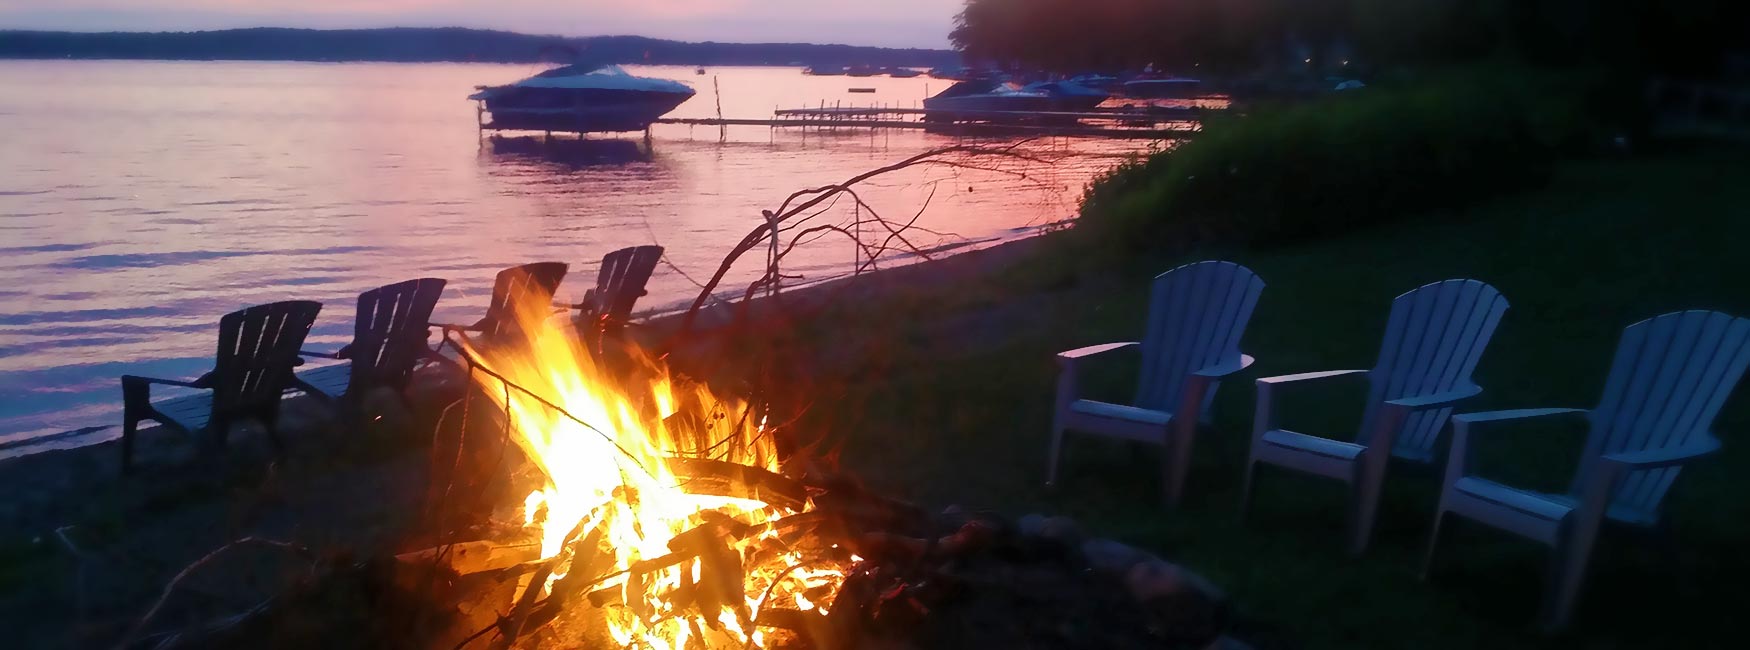 bonfire at lake